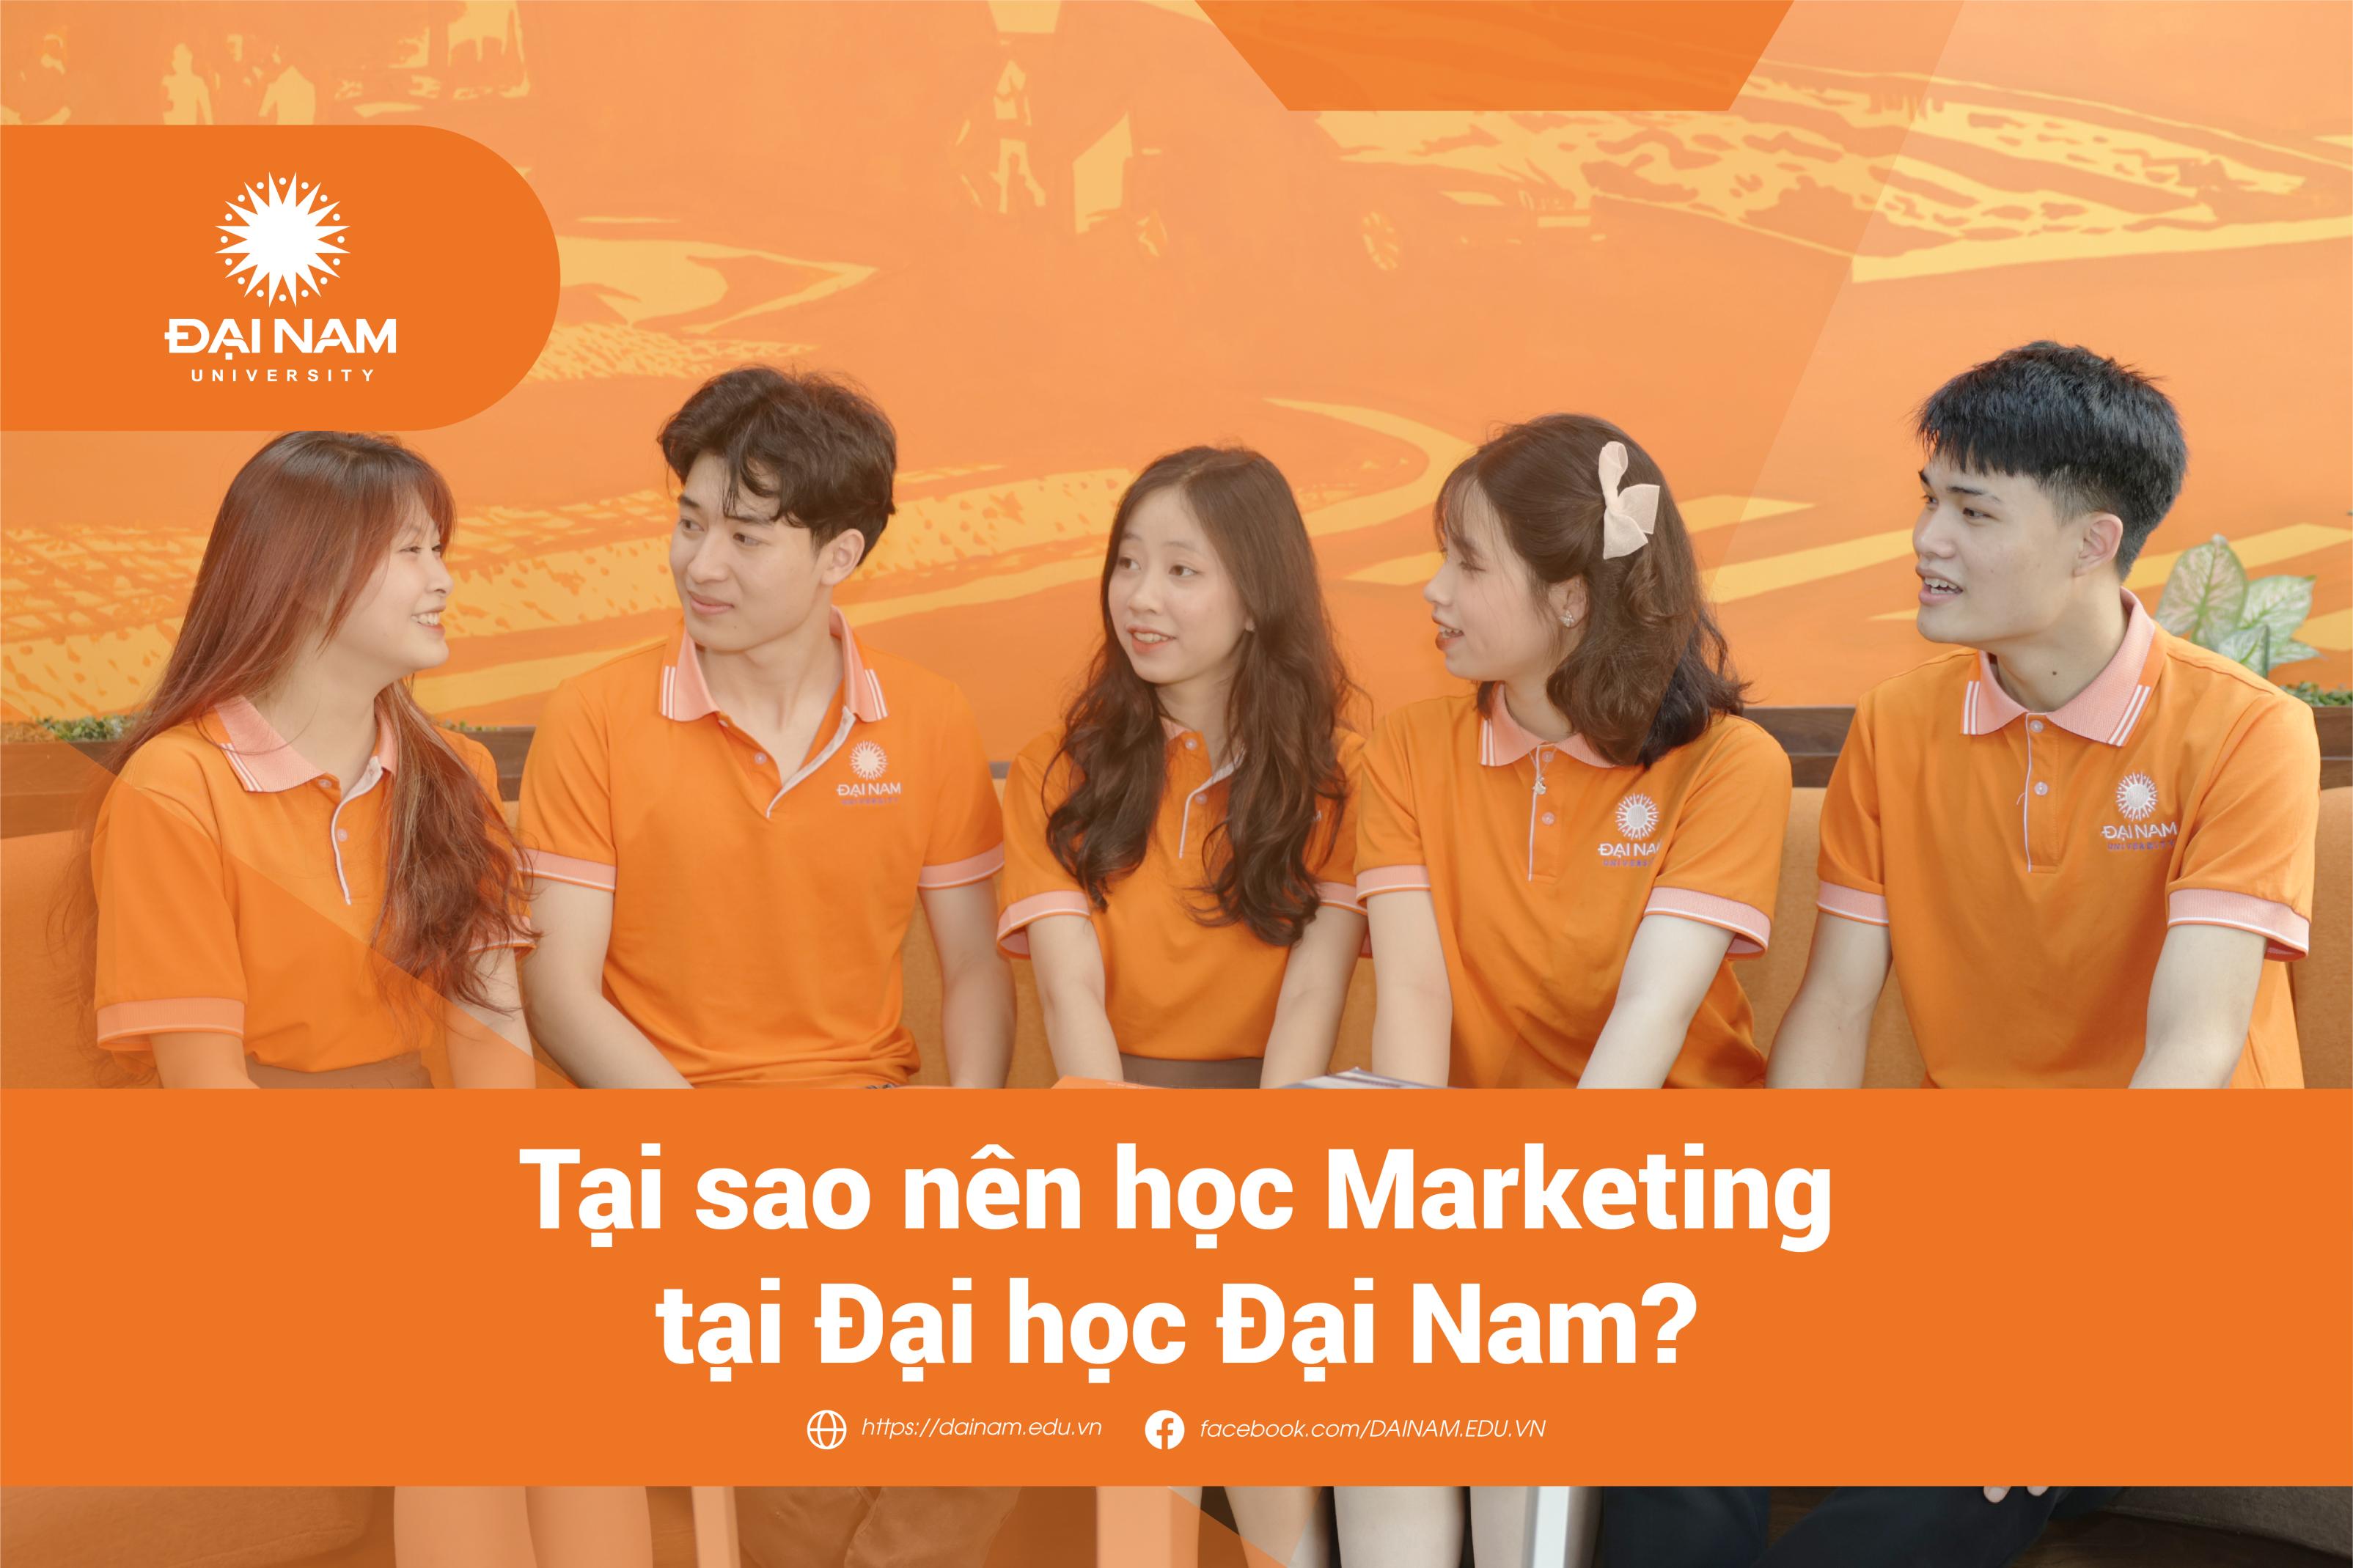 nganh-marketing-chuyen-nganh-digital-marketing-hoc-gi-tai-sao-nen-hoc-marketing-tai-dai-hoc-dai-nam